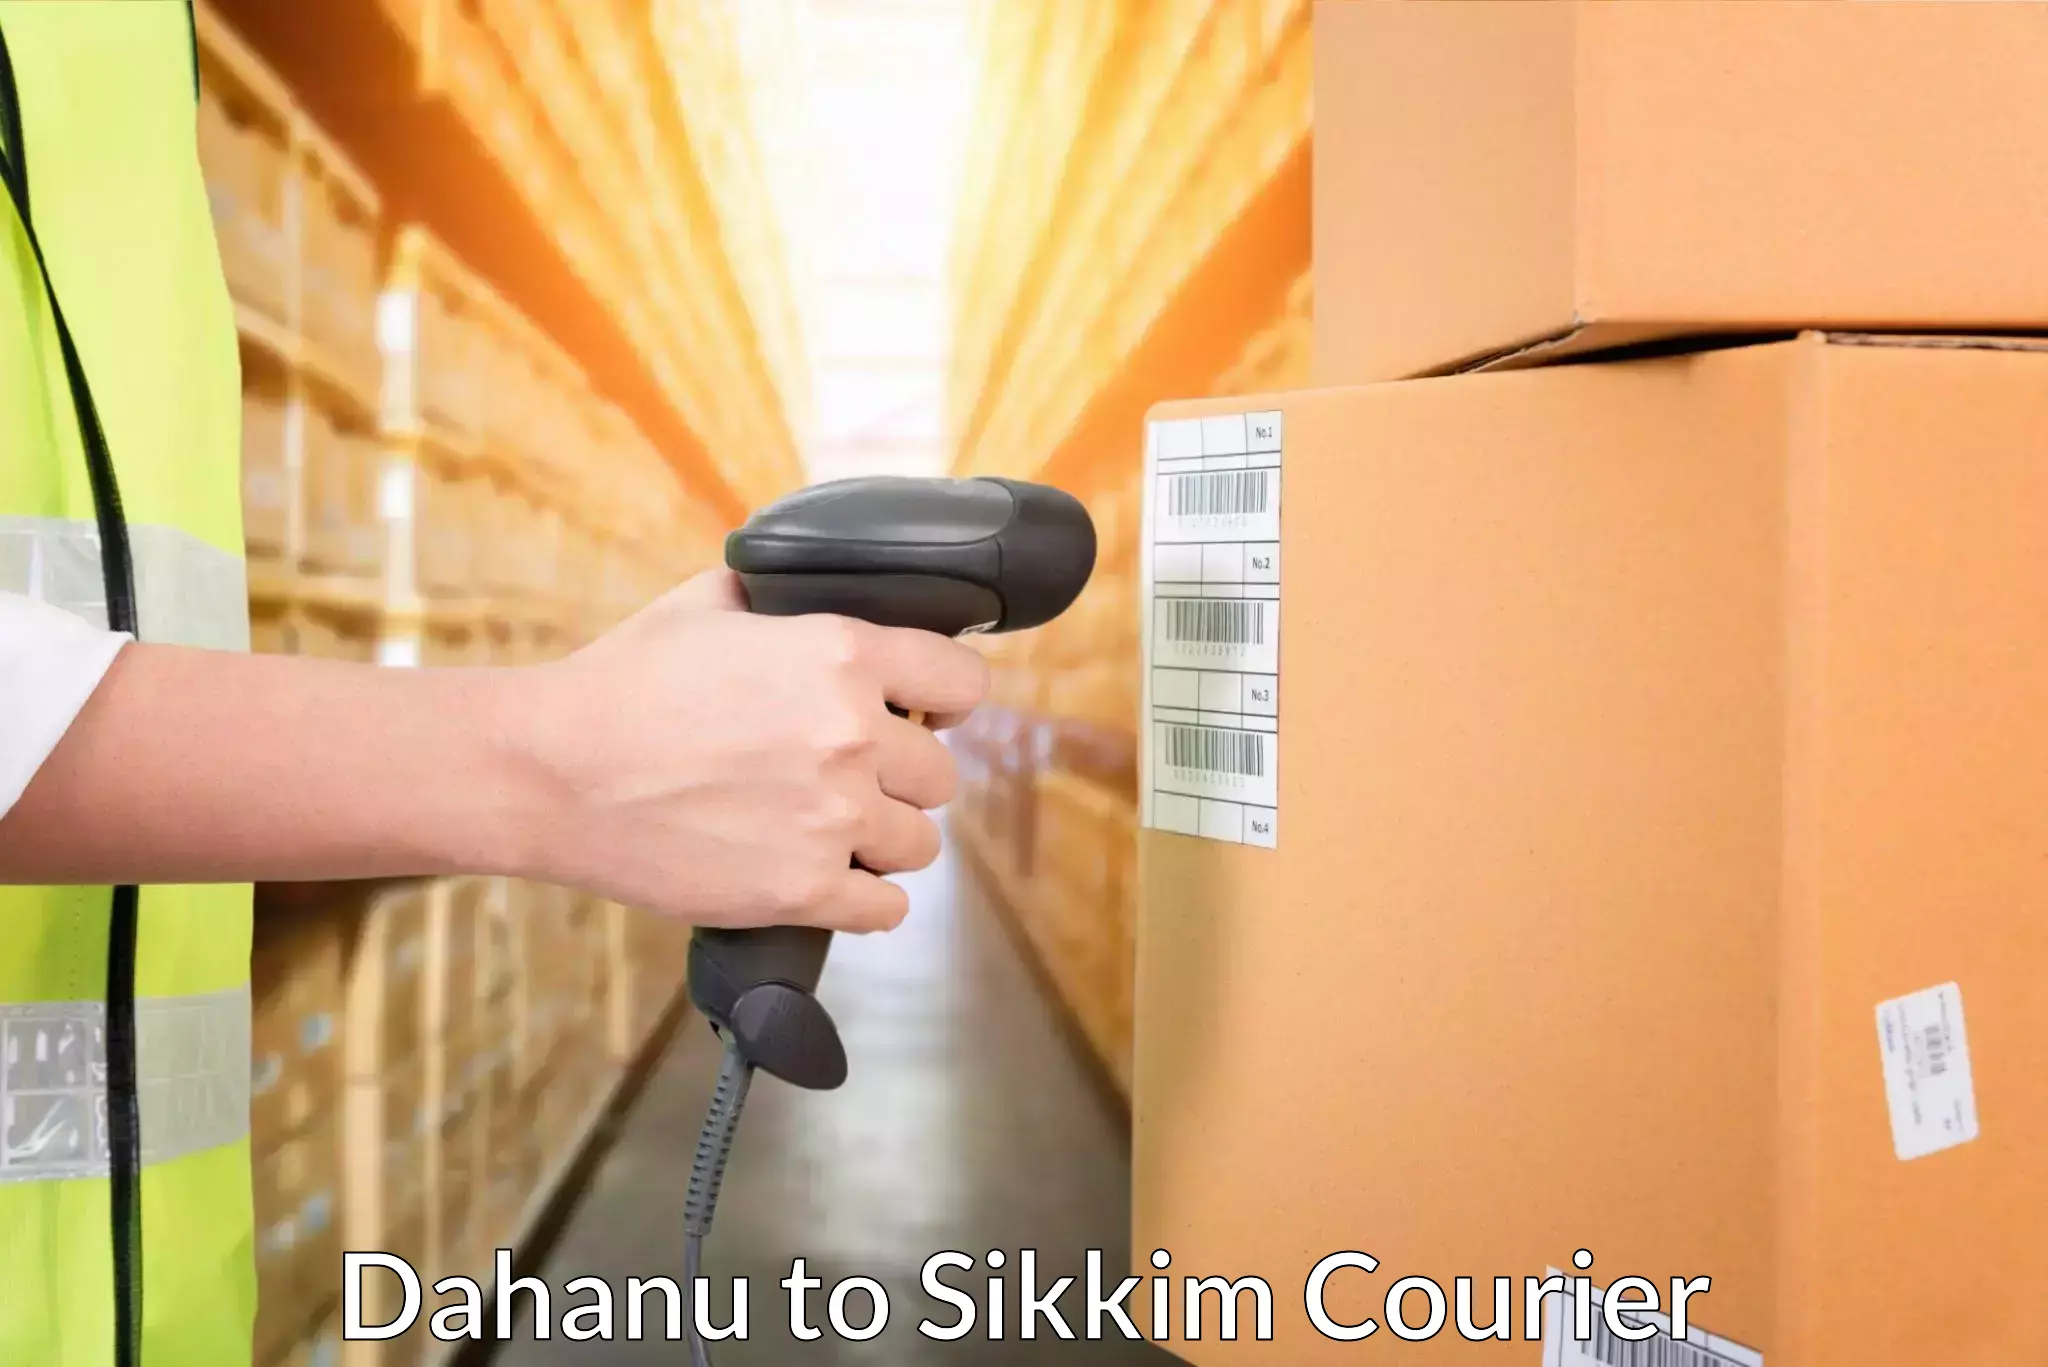 Seamless shipping experience Dahanu to Mangan